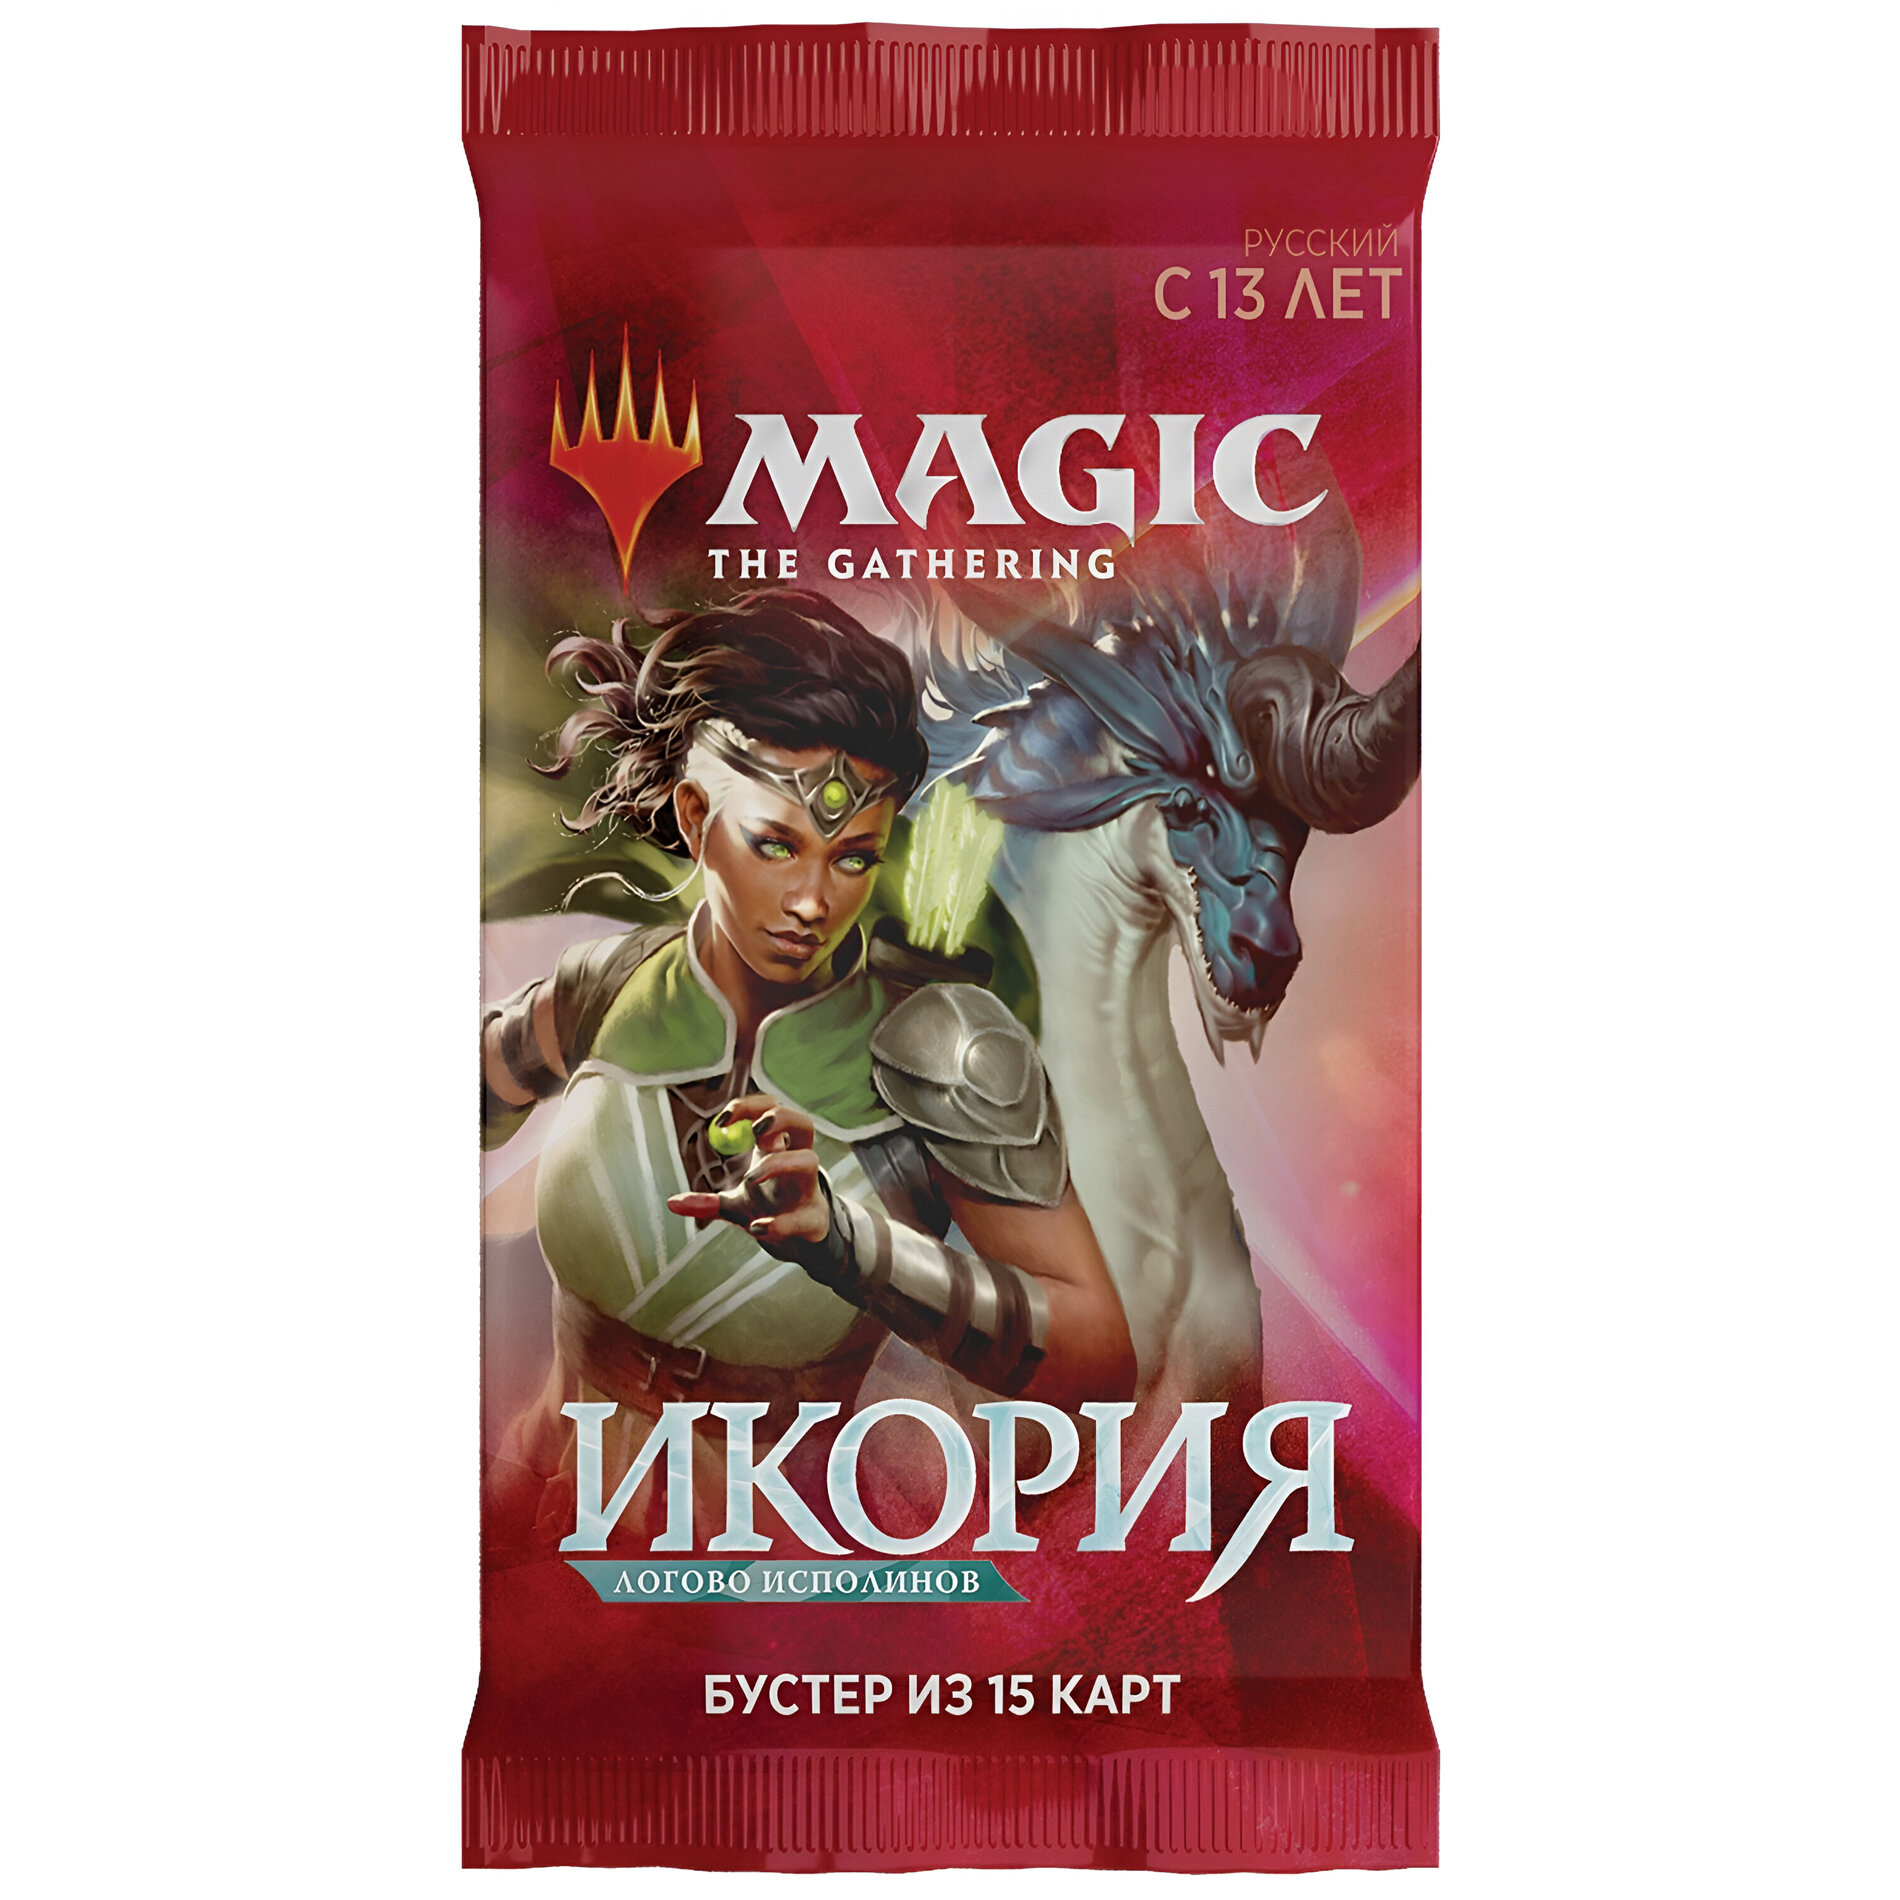 Magic The Gathering: Пререлизный набор MTG издания Икория Логово Исполинов на русском